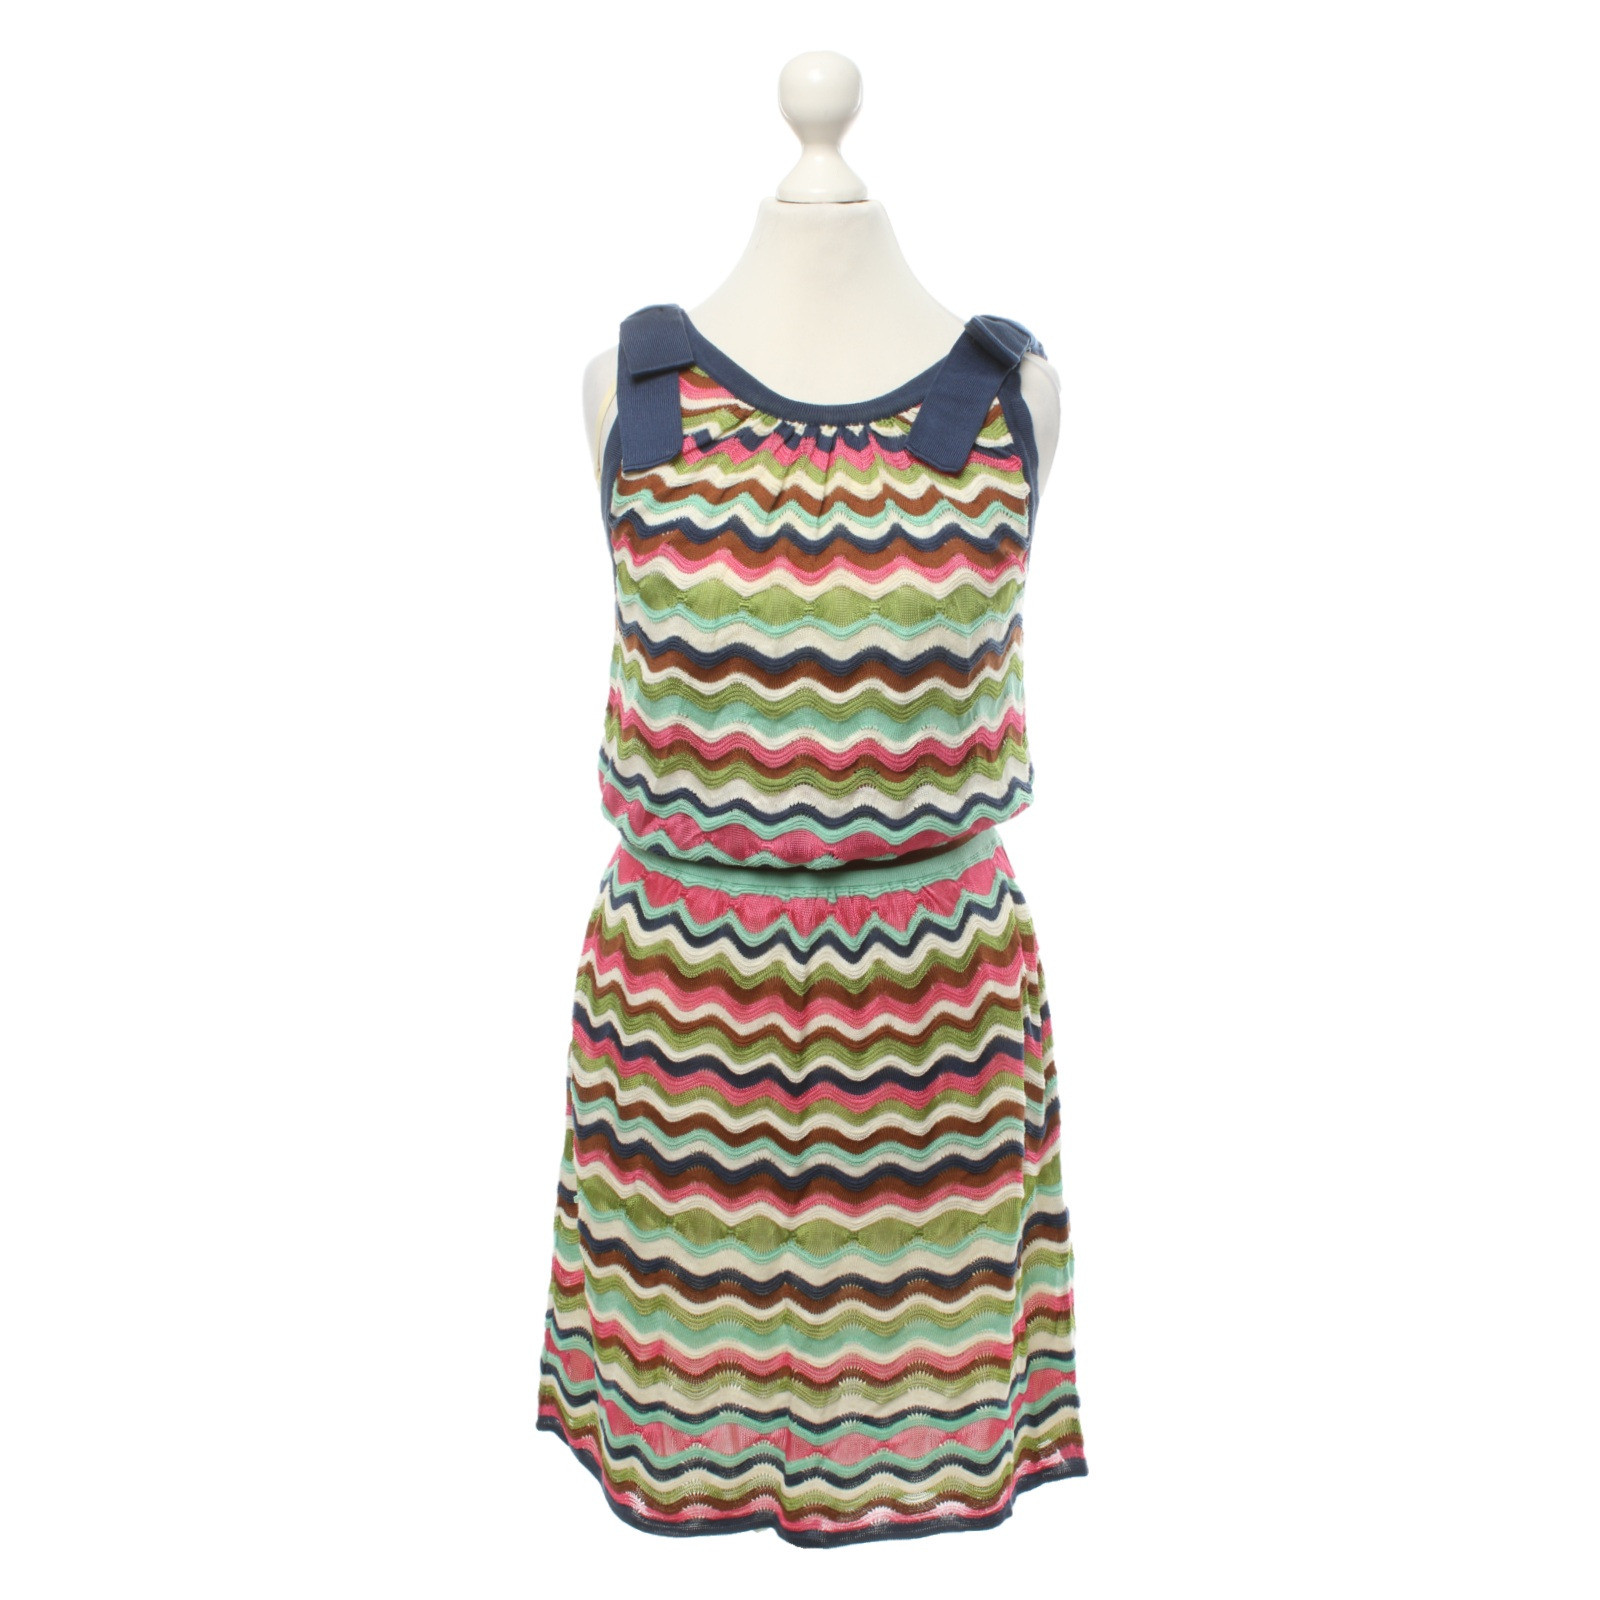 M Missoni Kleid - Second Hand M Missoni Kleid gebraucht kaufen für 89€  (5121603)